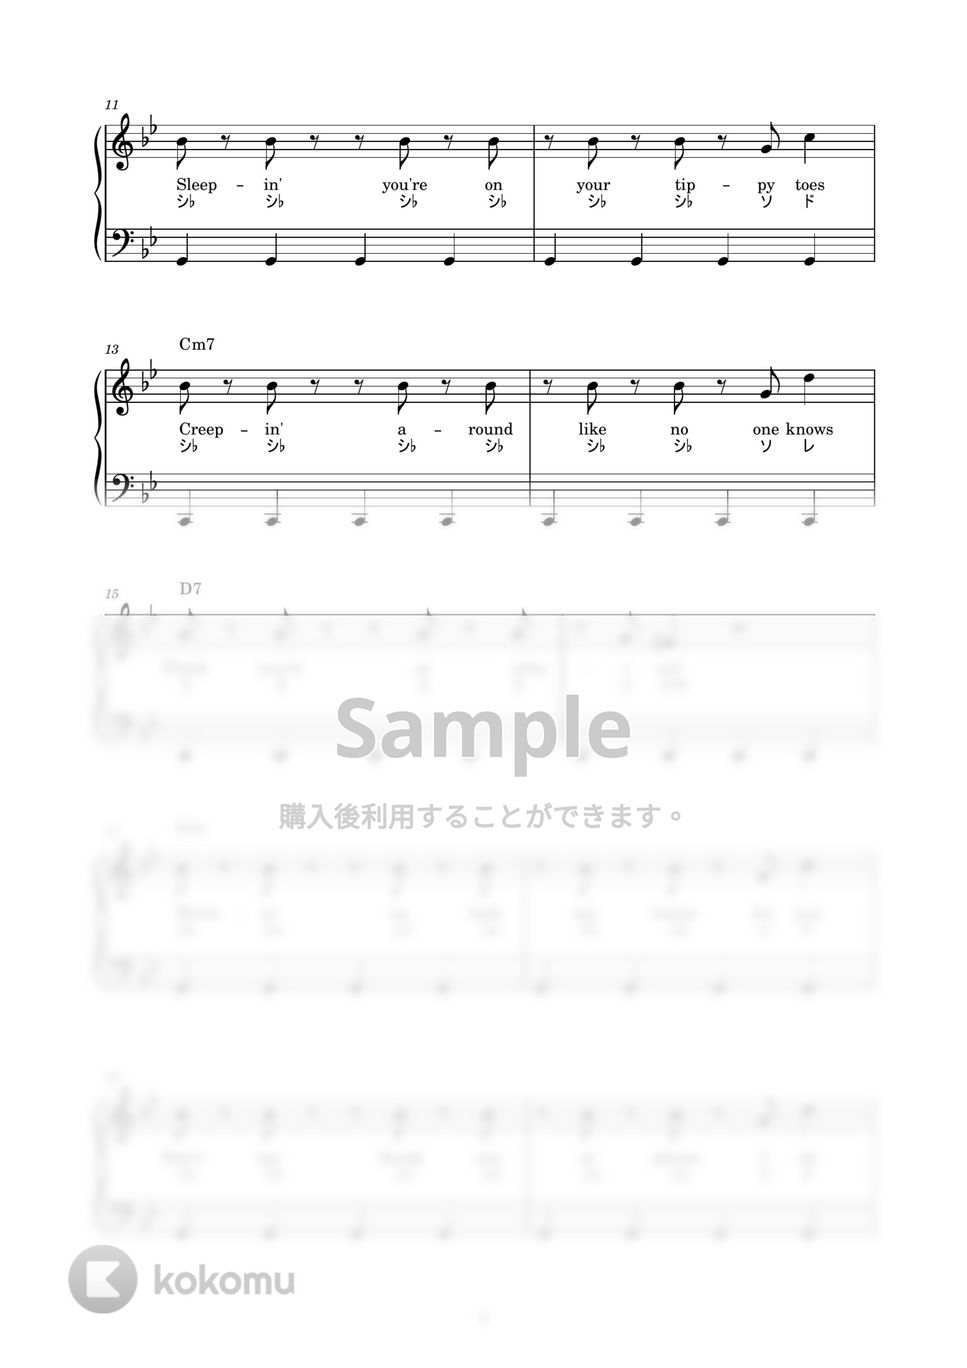 Billie Eilish - bad guy(ドラマ Version) (かんたん / 歌詞付き / ドレミ付き / 初心者) by piano.tokyo